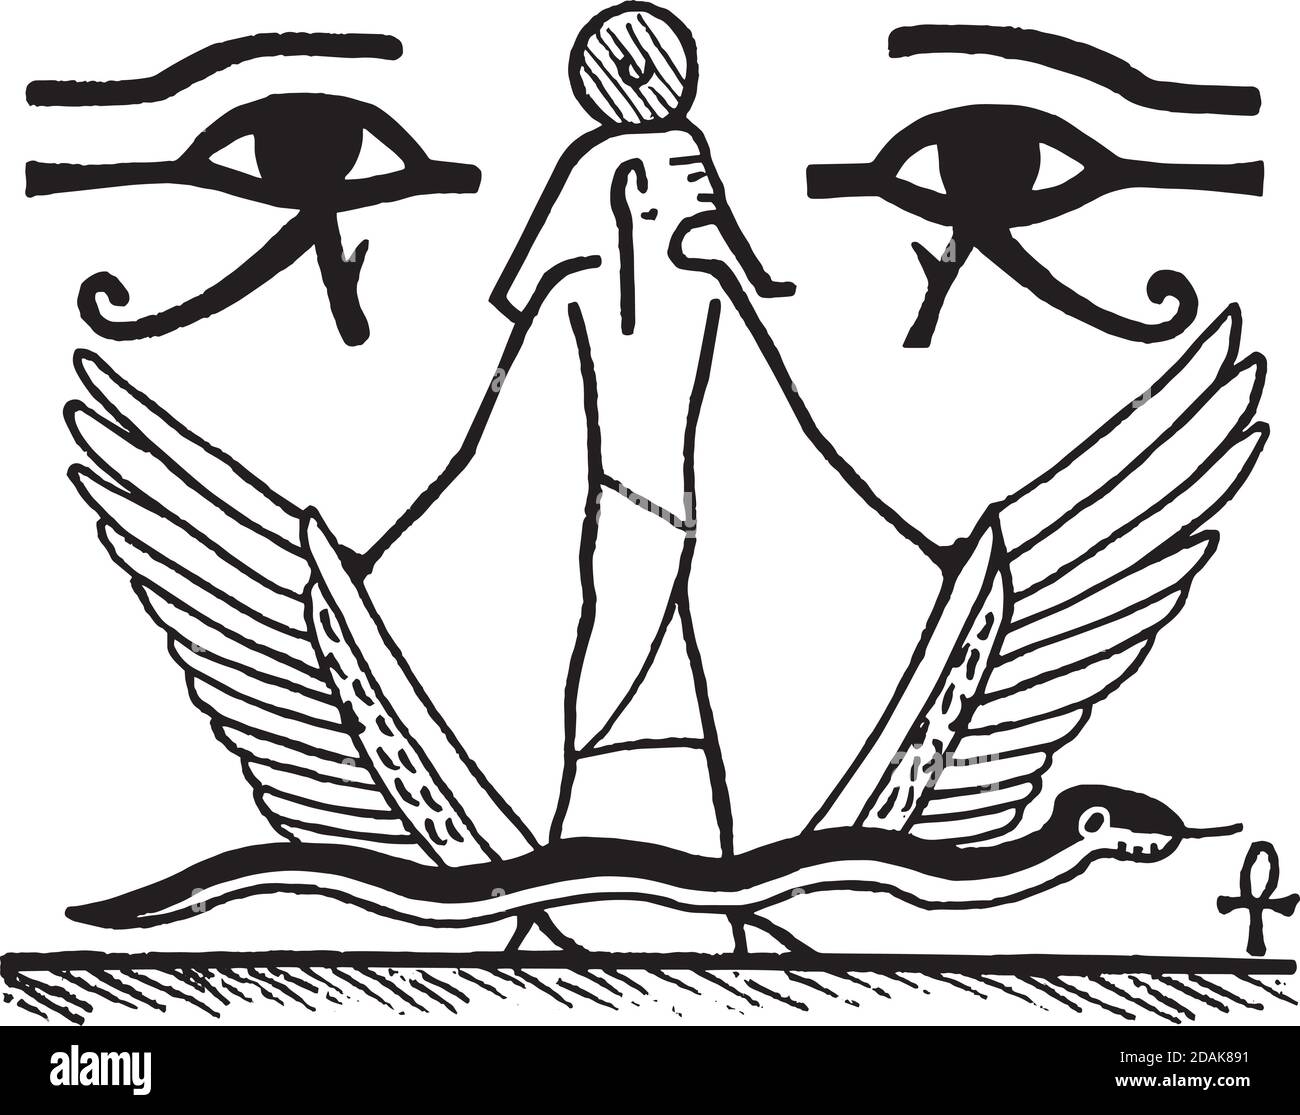 Zeichnung von Hieroglyphen Symbolen und pharao im alten Ägypten Stil mit weißem Hintergrund. Digitale Illustration. Stockfoto